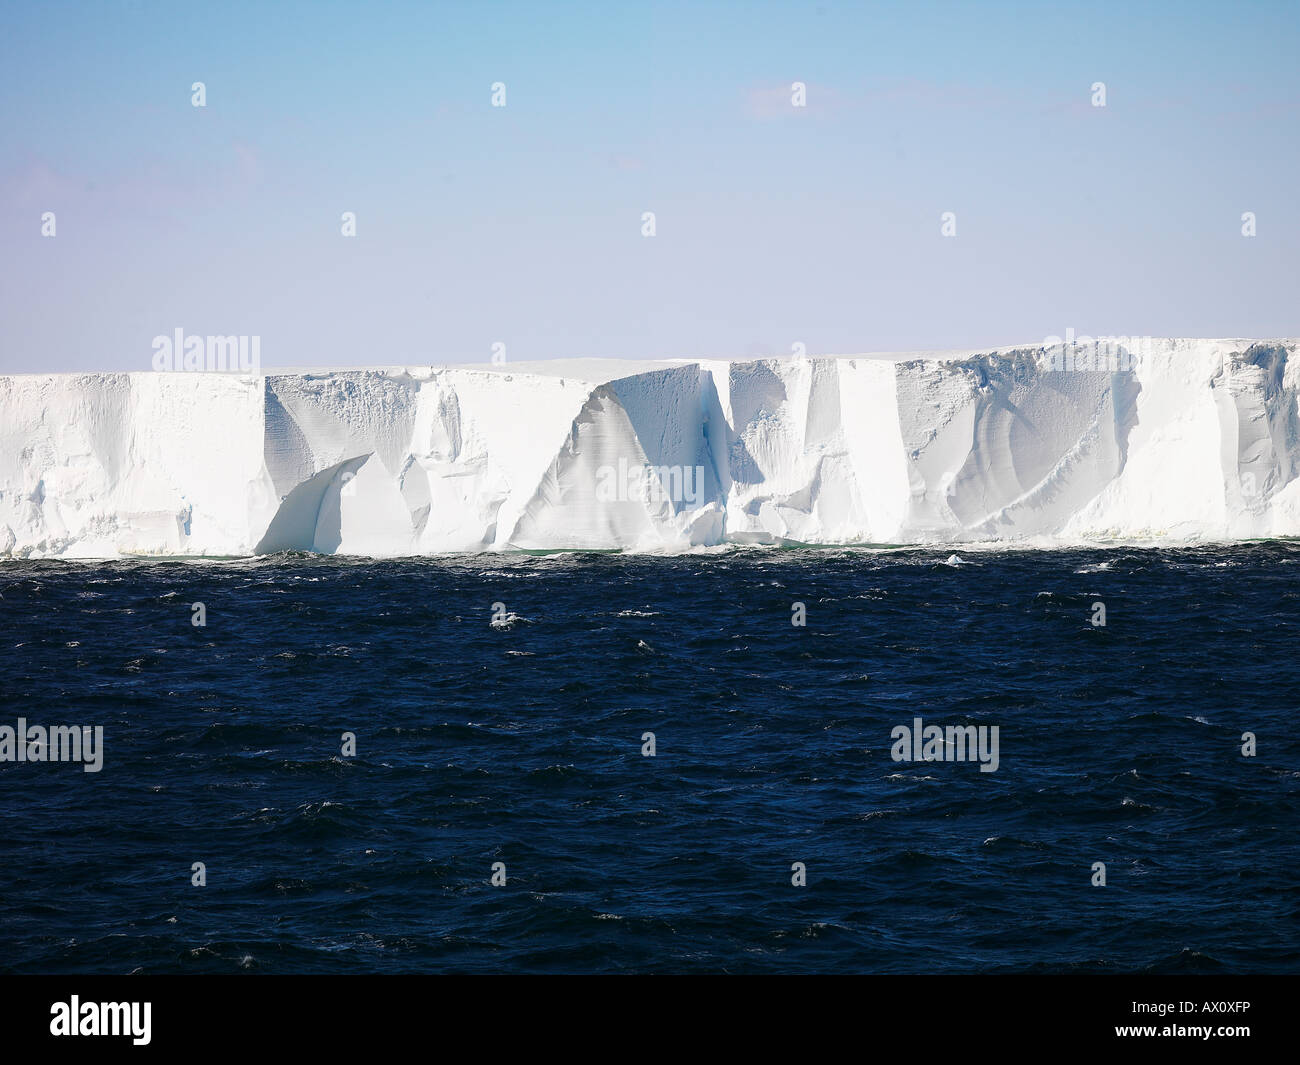 Plataforma de Hielo de Ross, edge que van desde los 40 hasta los 80 metros (130-260 pies) de alto, la Antártida Foto de stock